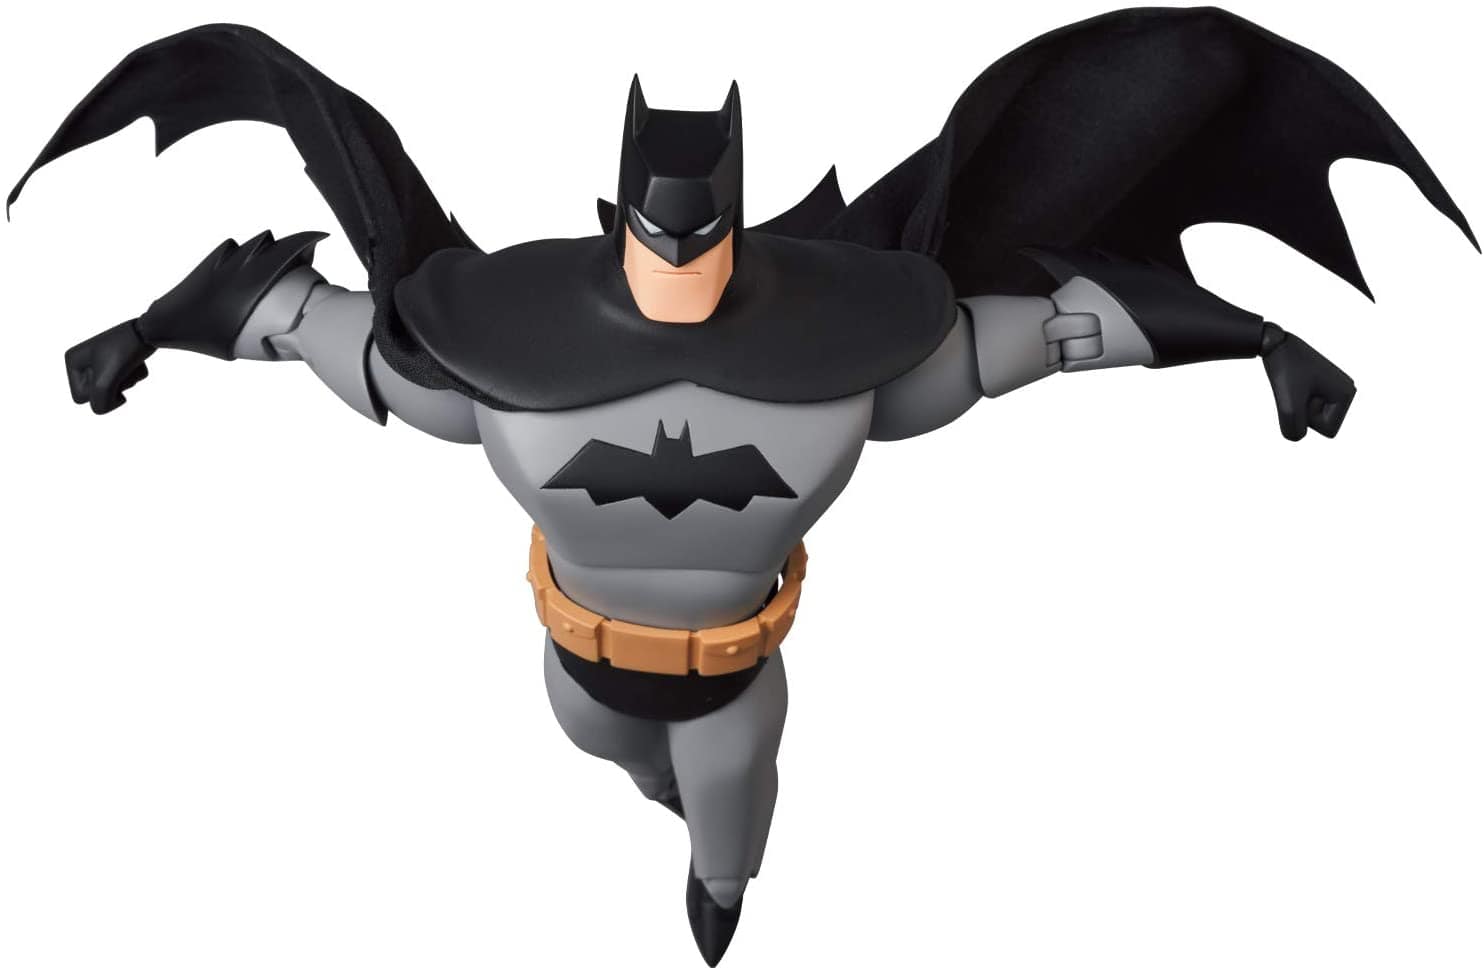 Medicom Toy MAFEX No. 137 The New Batman Adventures Batman Action Figure